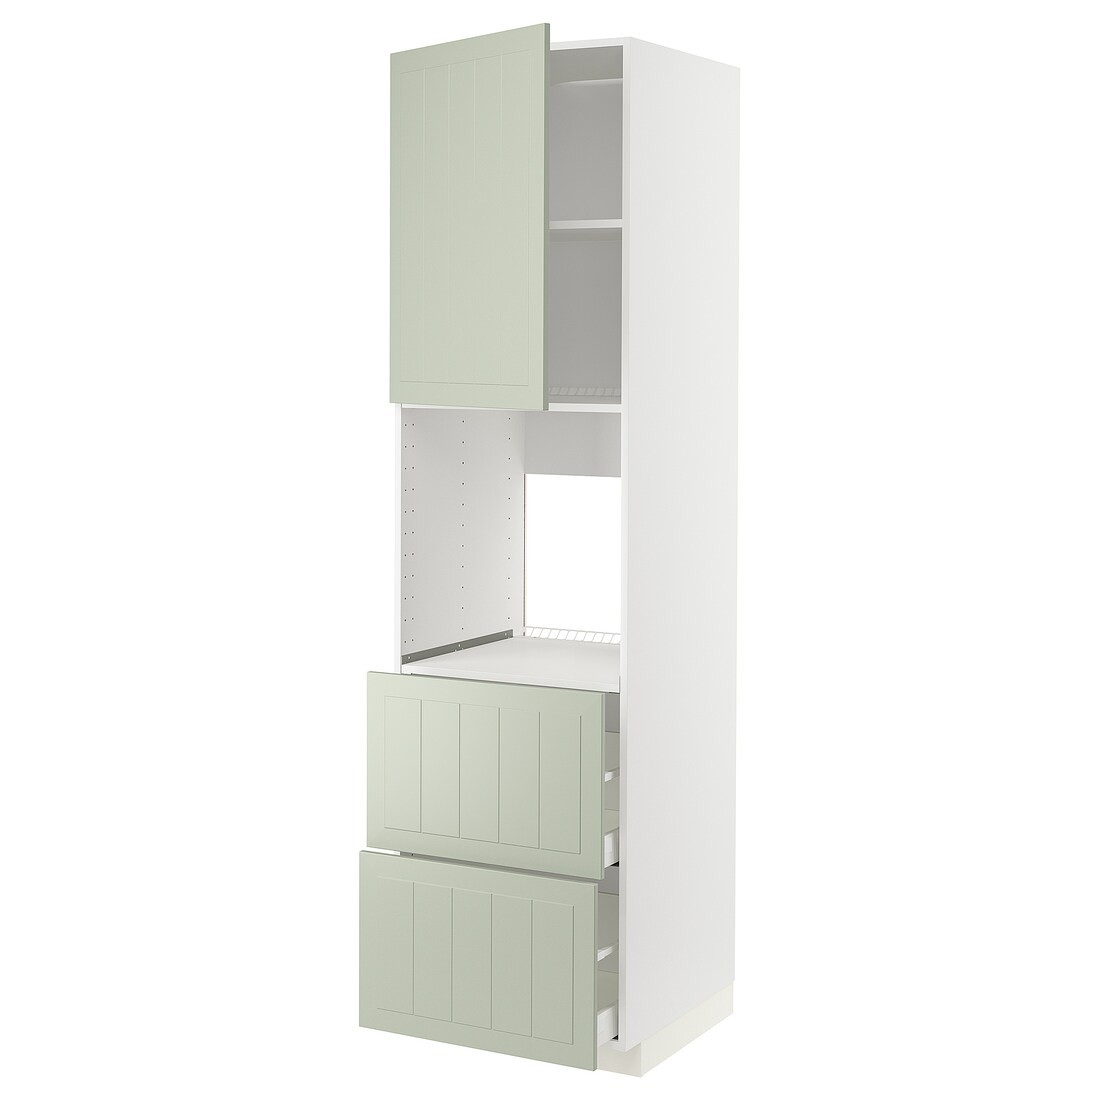 METOD МЕТОД / MAXIMERA МАКСИМЕРА Высокий шкаф для духовки с дверцей / ящиками, белый / Stensund светло-зеленый, 60x60x220 см